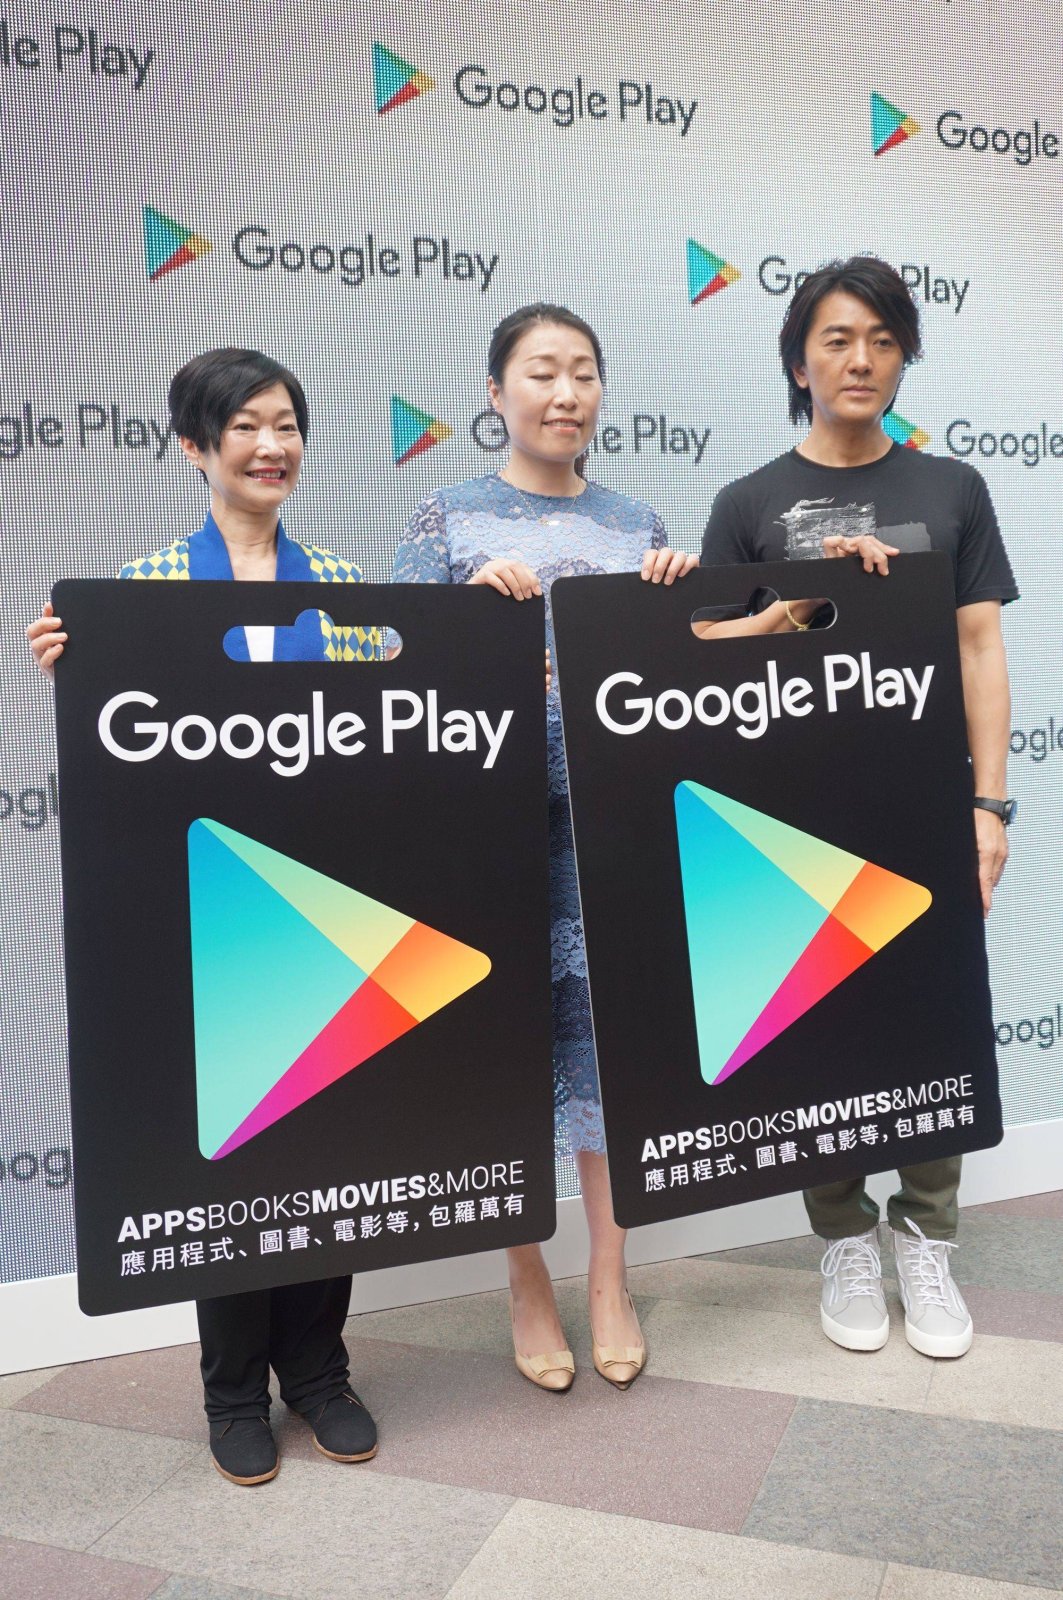 Drei Personen halten Schilder mit dem Google Play-Logo hoch.